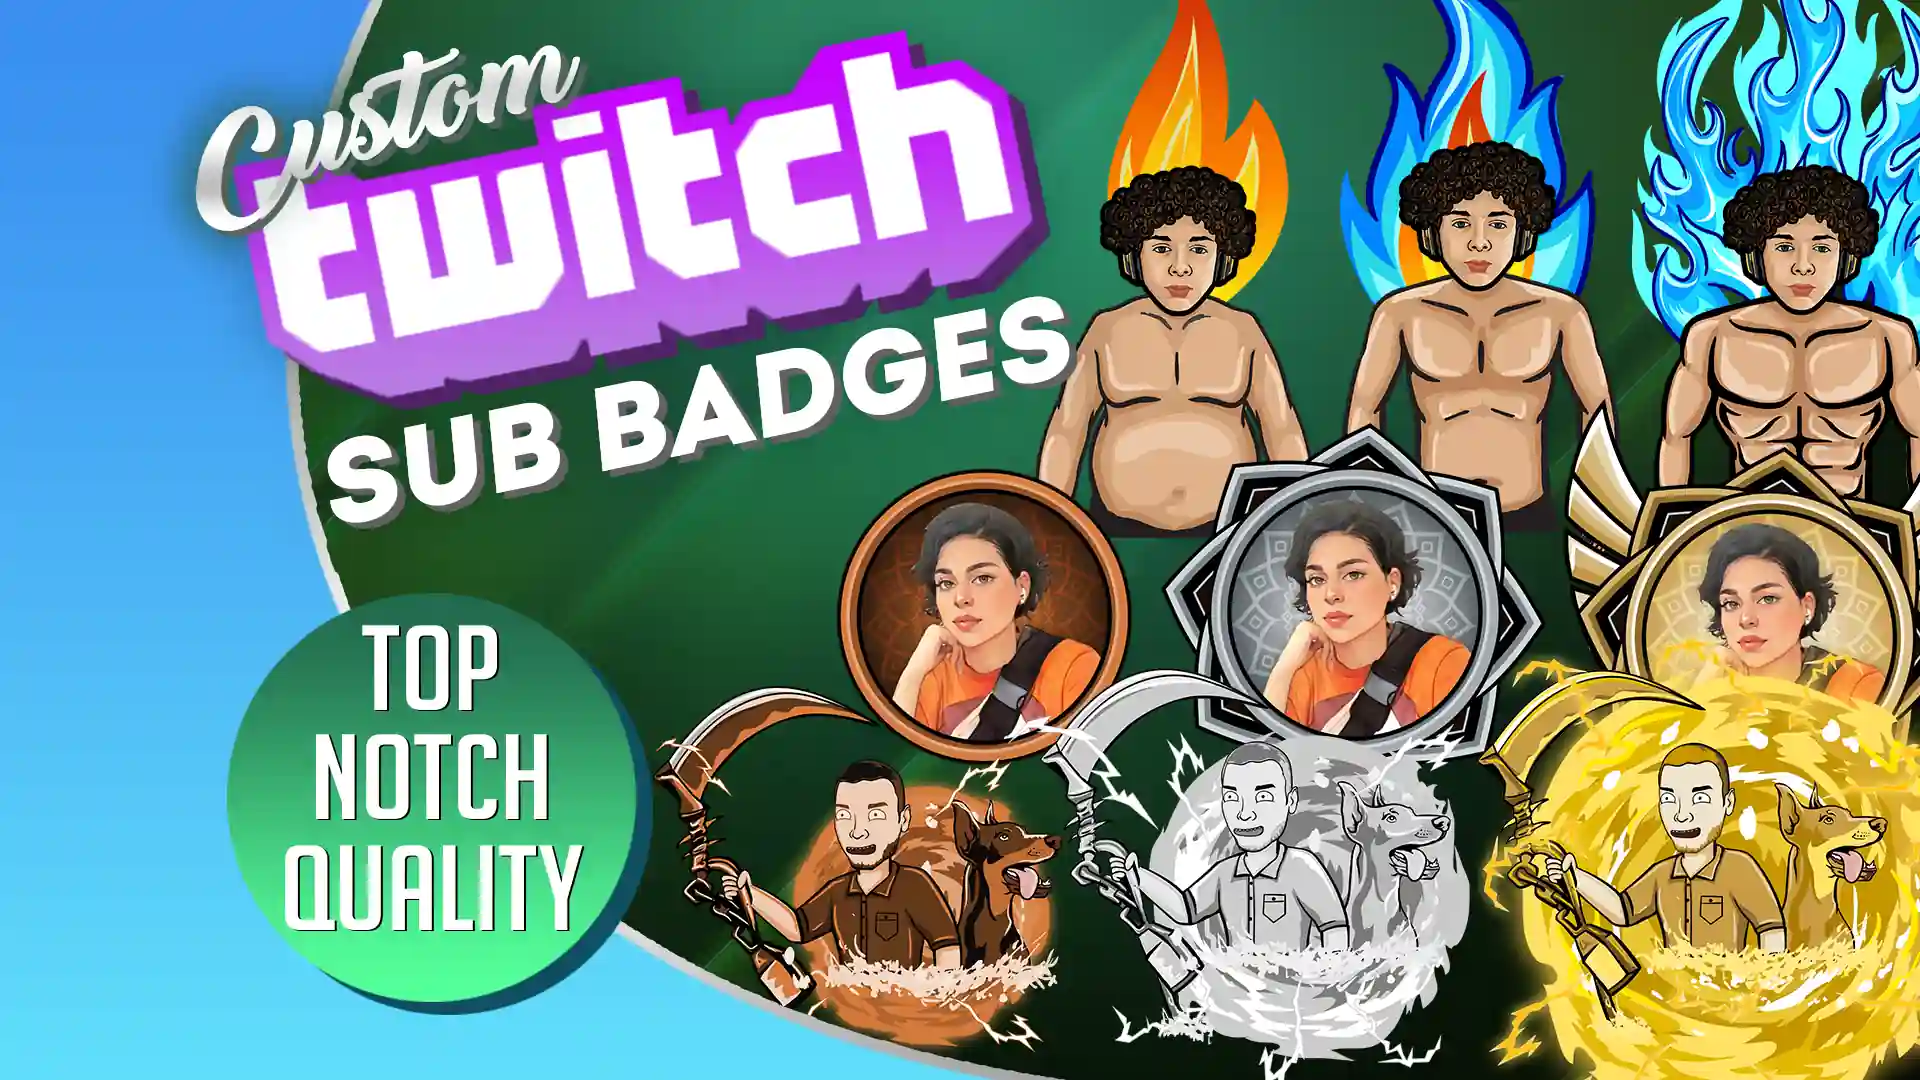 GFS Twitch Sub Badges